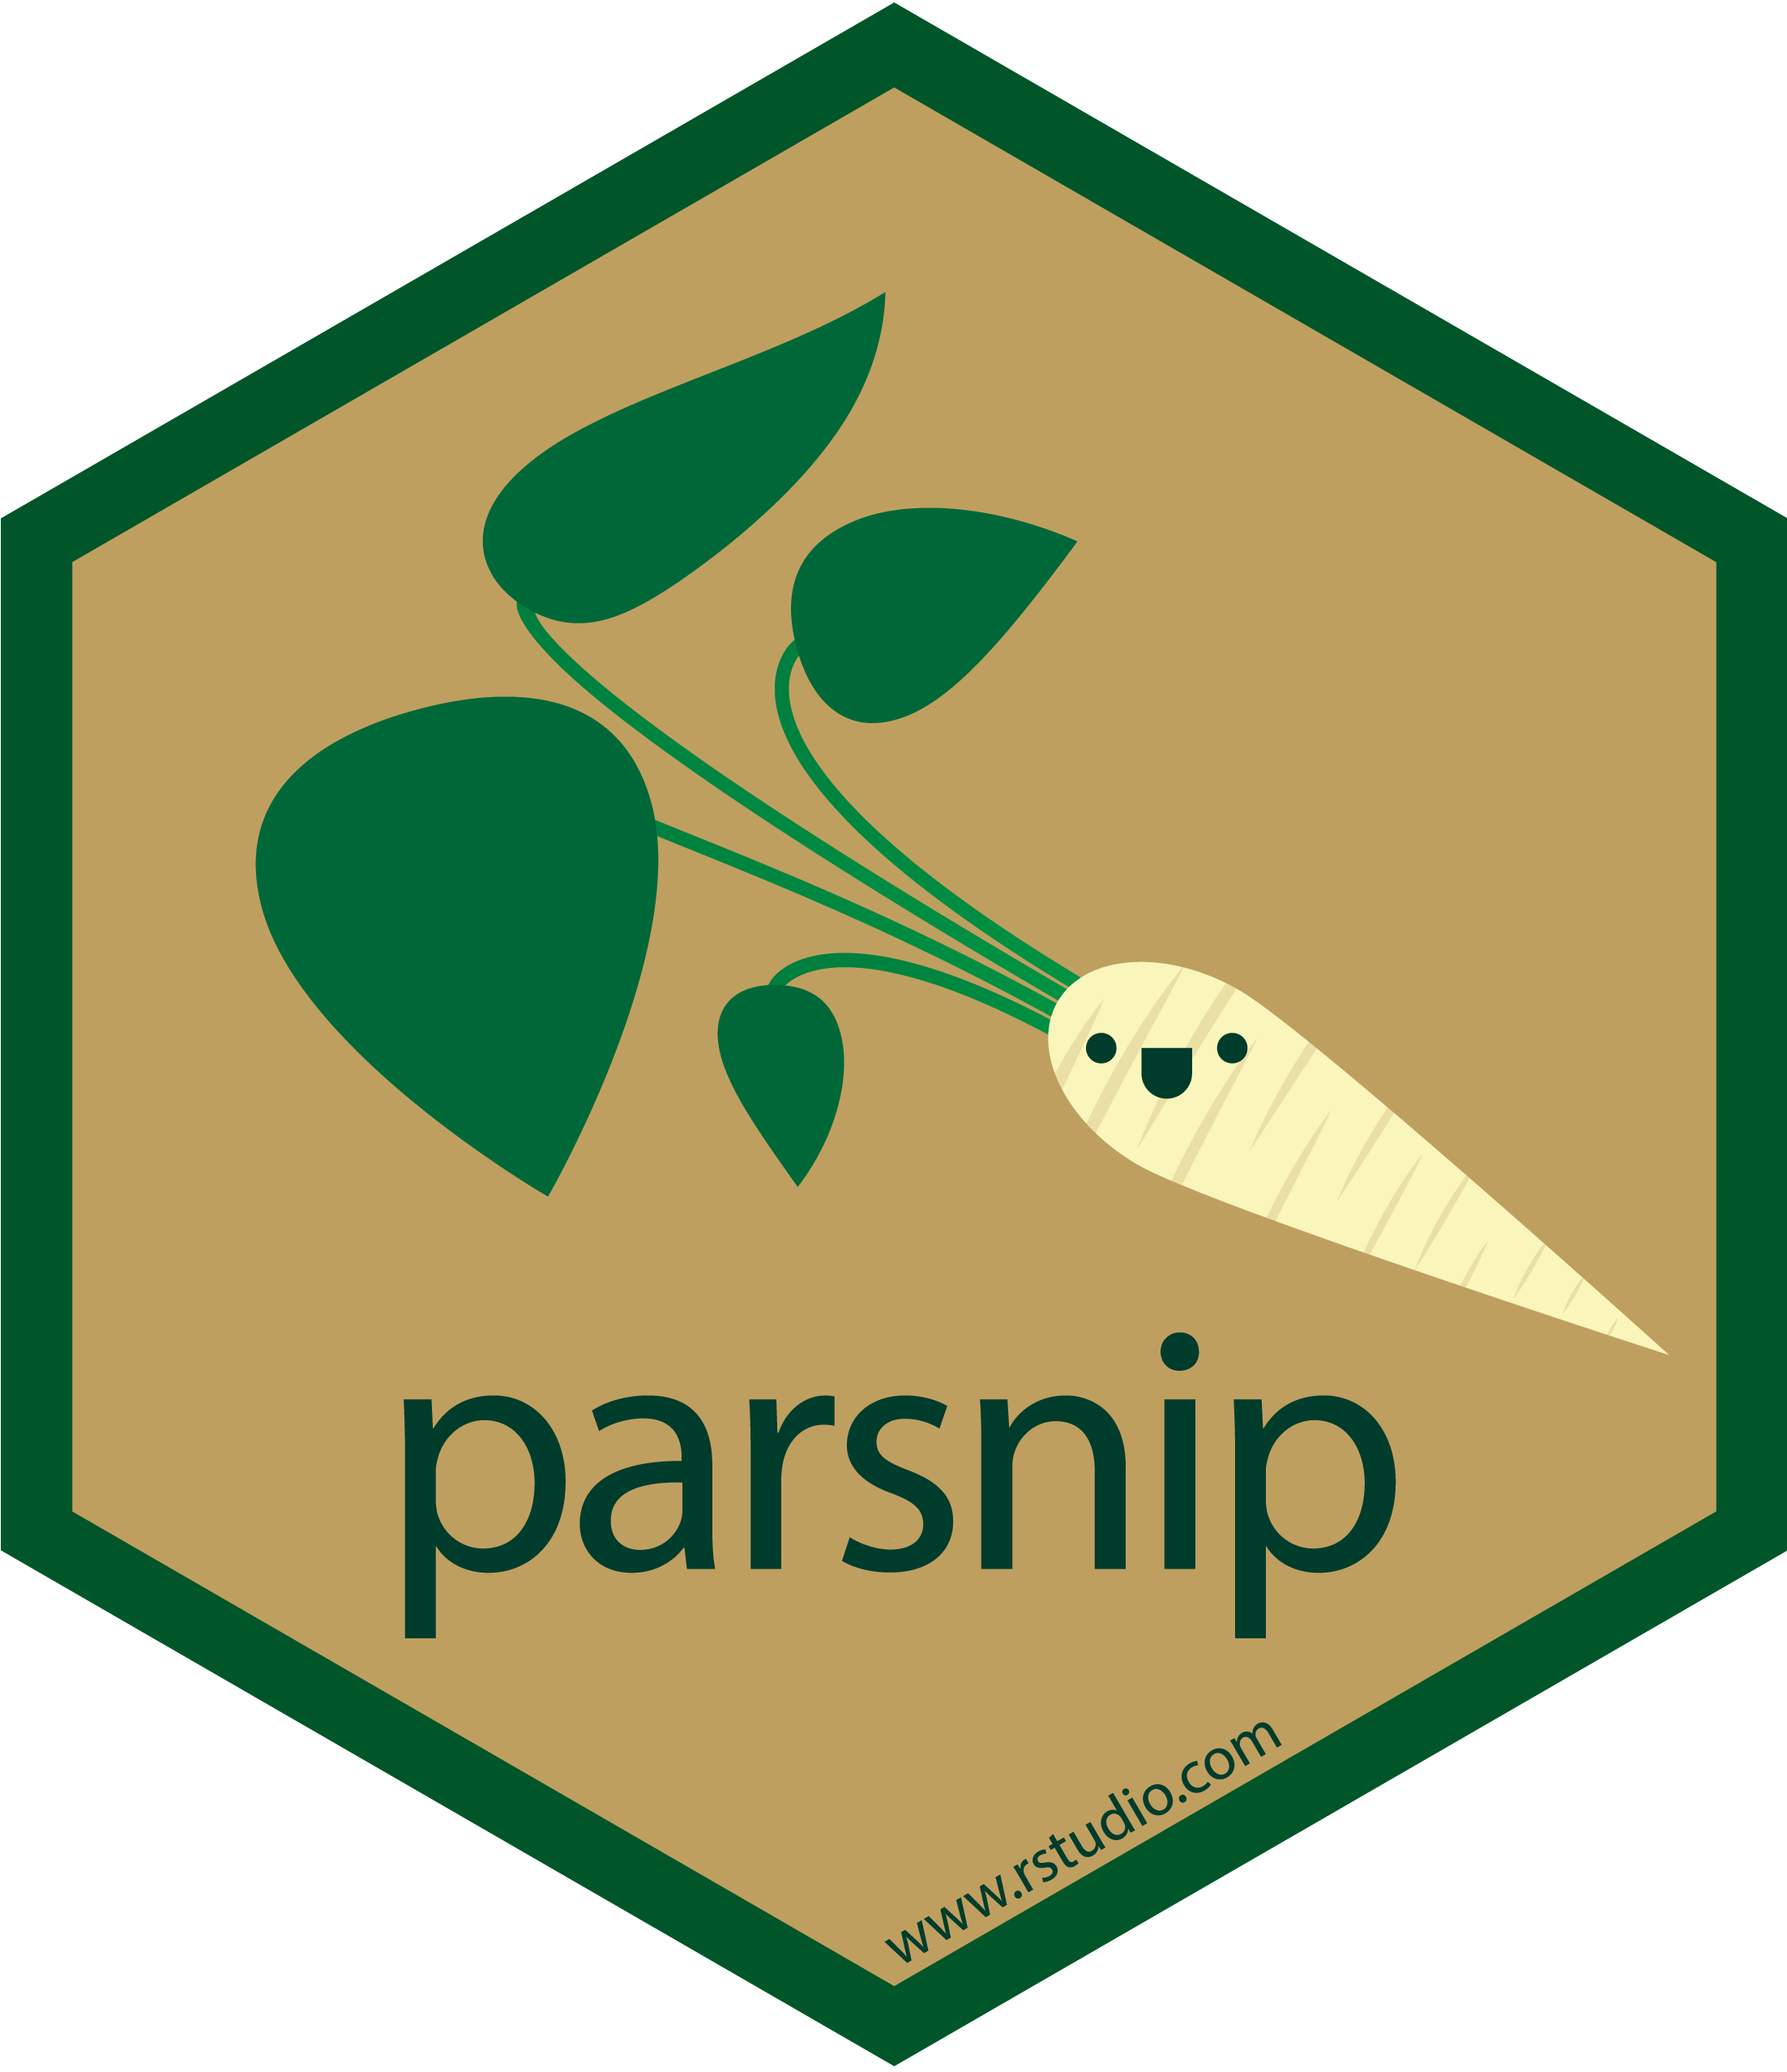 parsnip hex sticker